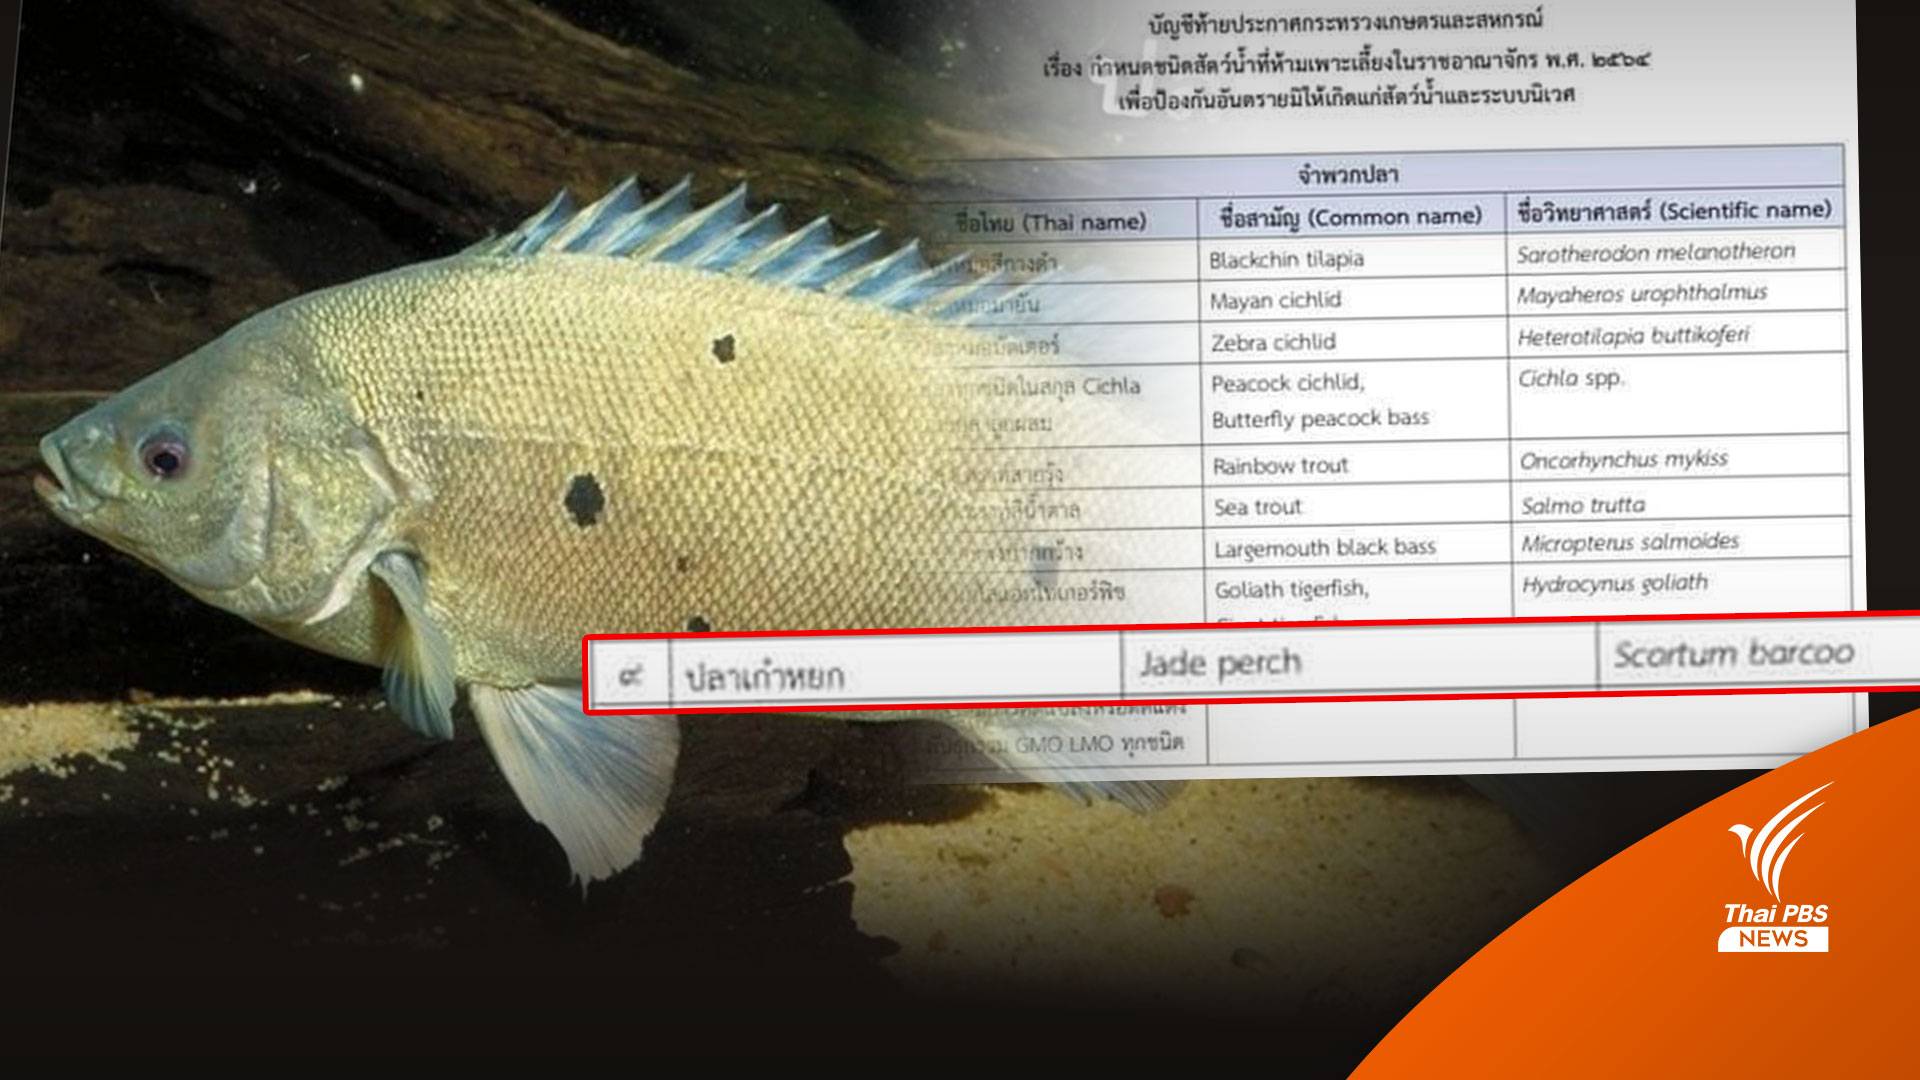 "ปลาหยก" เอเลียนสปีชีส์ 1 ใน 13 ชนิดที่ถูกห้ามนำเข้าไทย 